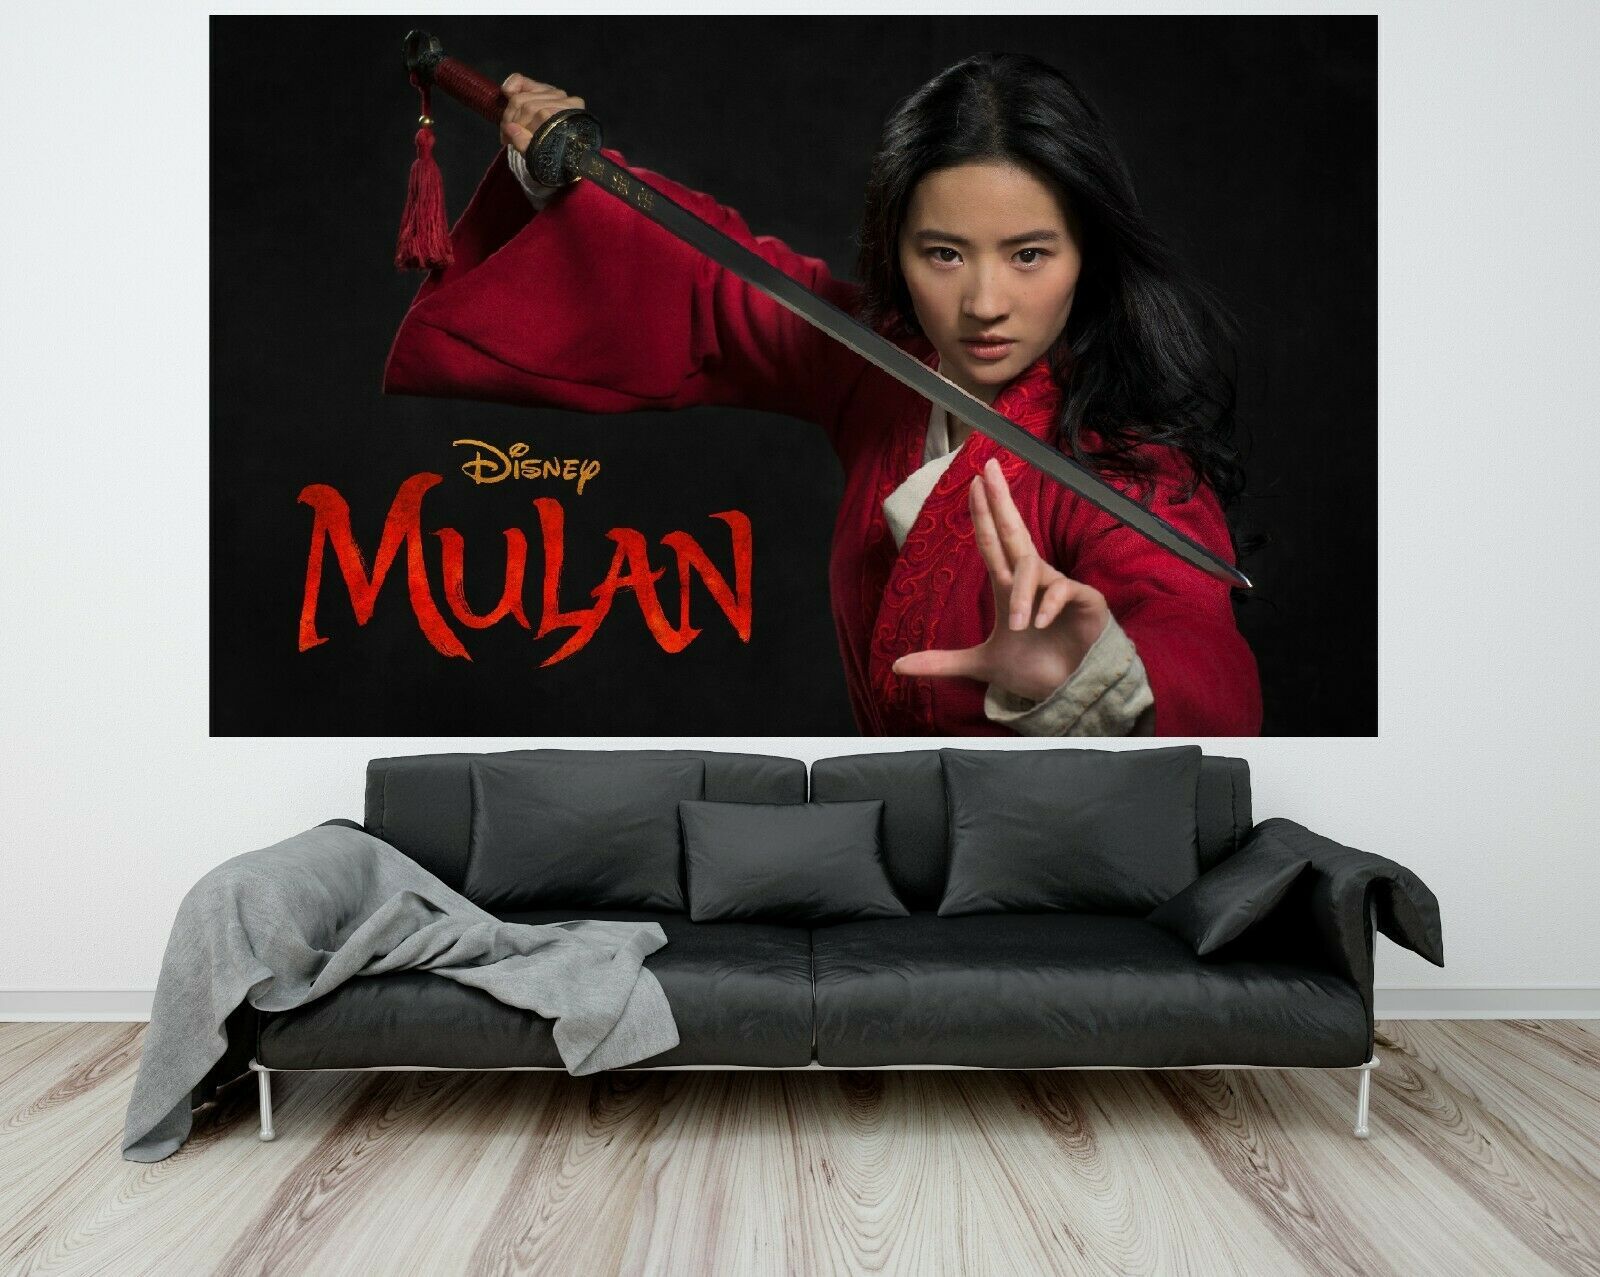 Mulan Poster Disney Movie Niki Caro Jet Li Yifei Liu Art Film Print 32x48 27x40